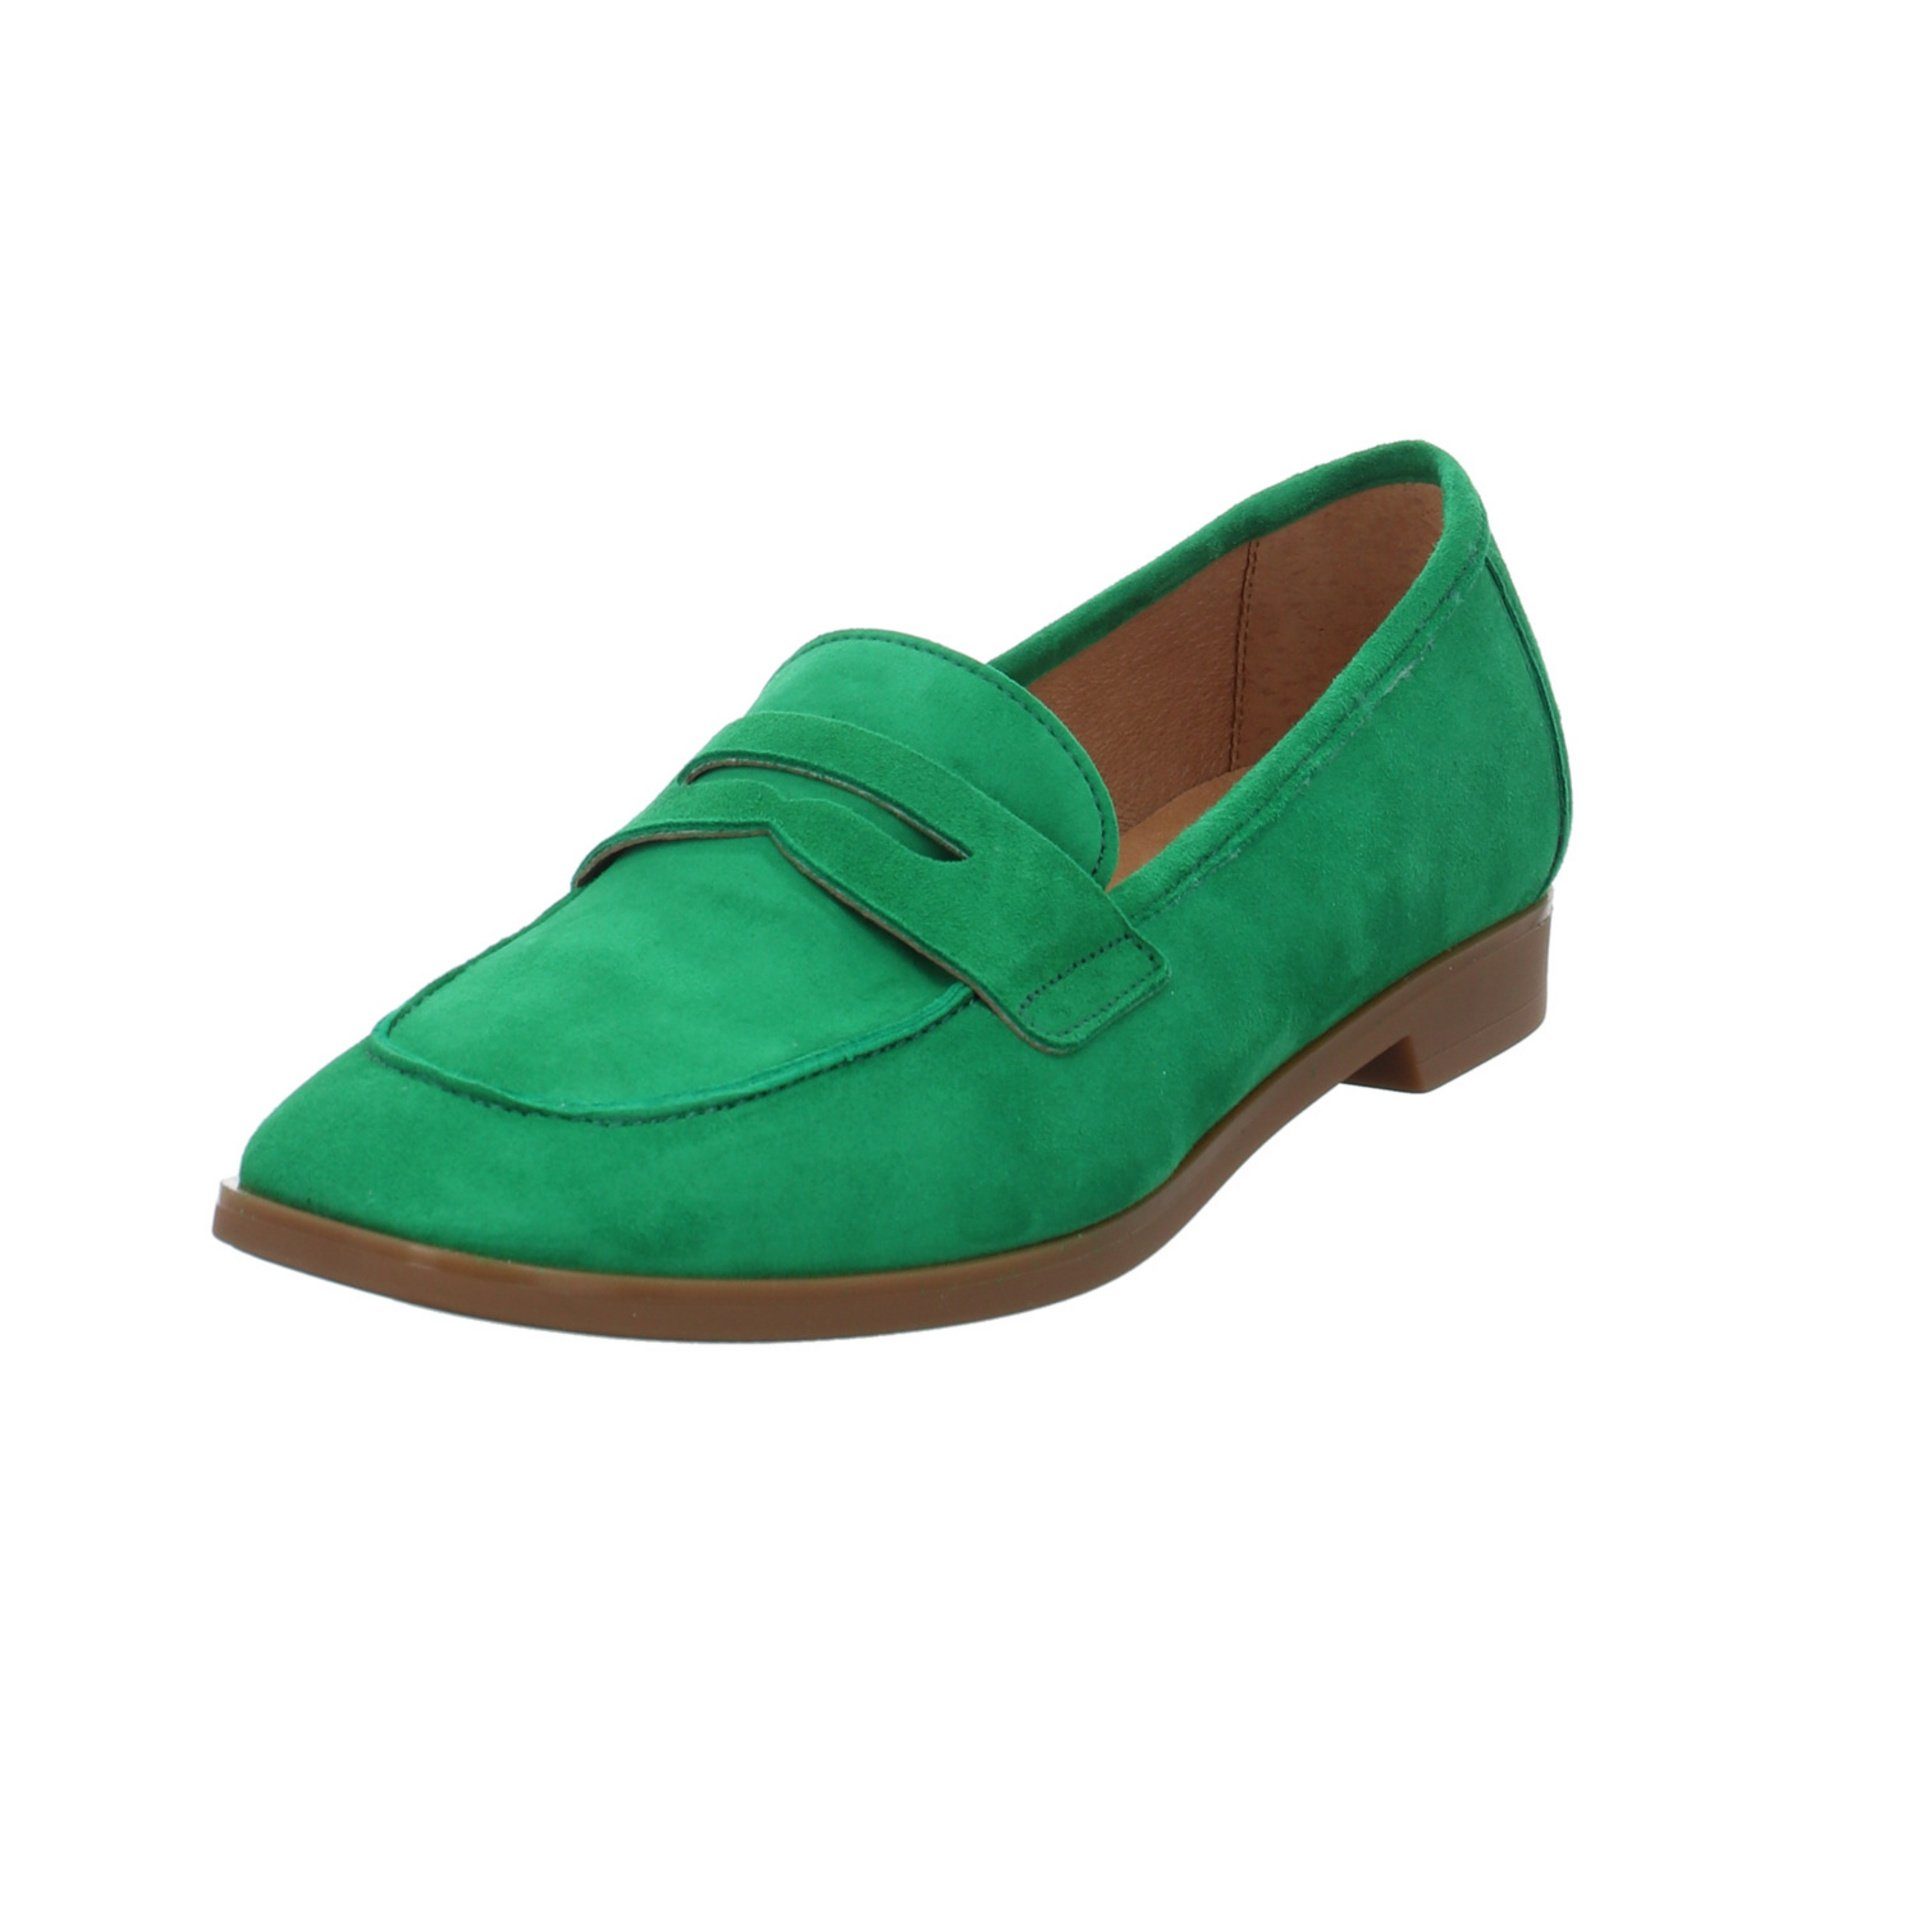 Schuhe Damen Gabor Slipper Slipper grün+petrol-mittel Glattleder Slipper